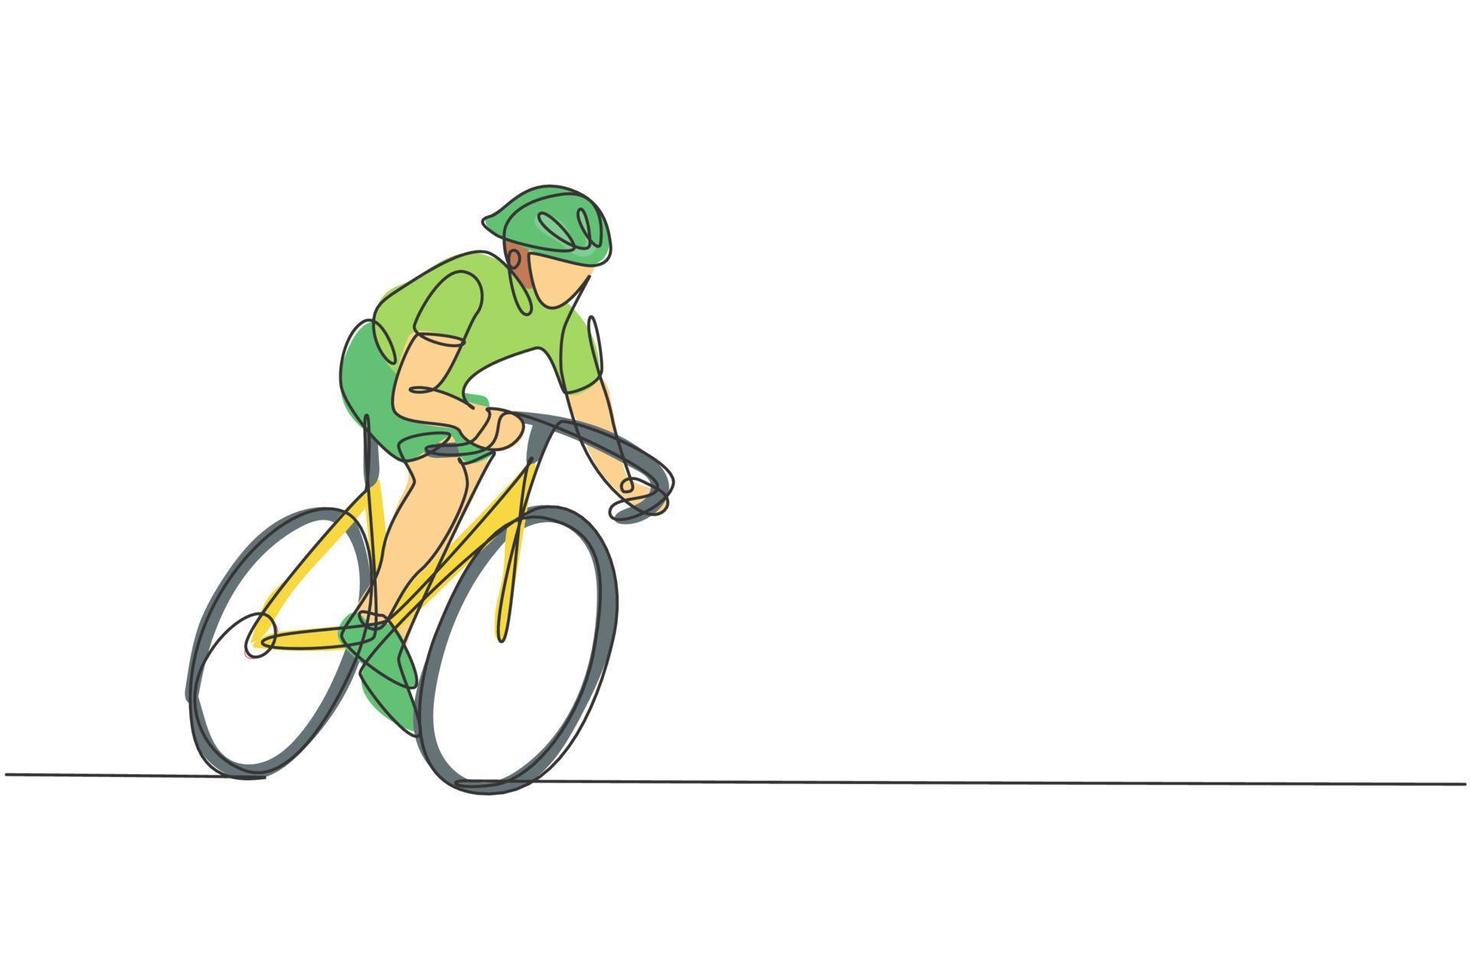 disegno a linea continua singola di un giovane ciclista agile in treno per pedalare velocemente in bicicletta. concetto di stile di vita sportivo. grafica alla moda di una linea di disegno vettoriale per i media di promozione delle gare ciclistiche